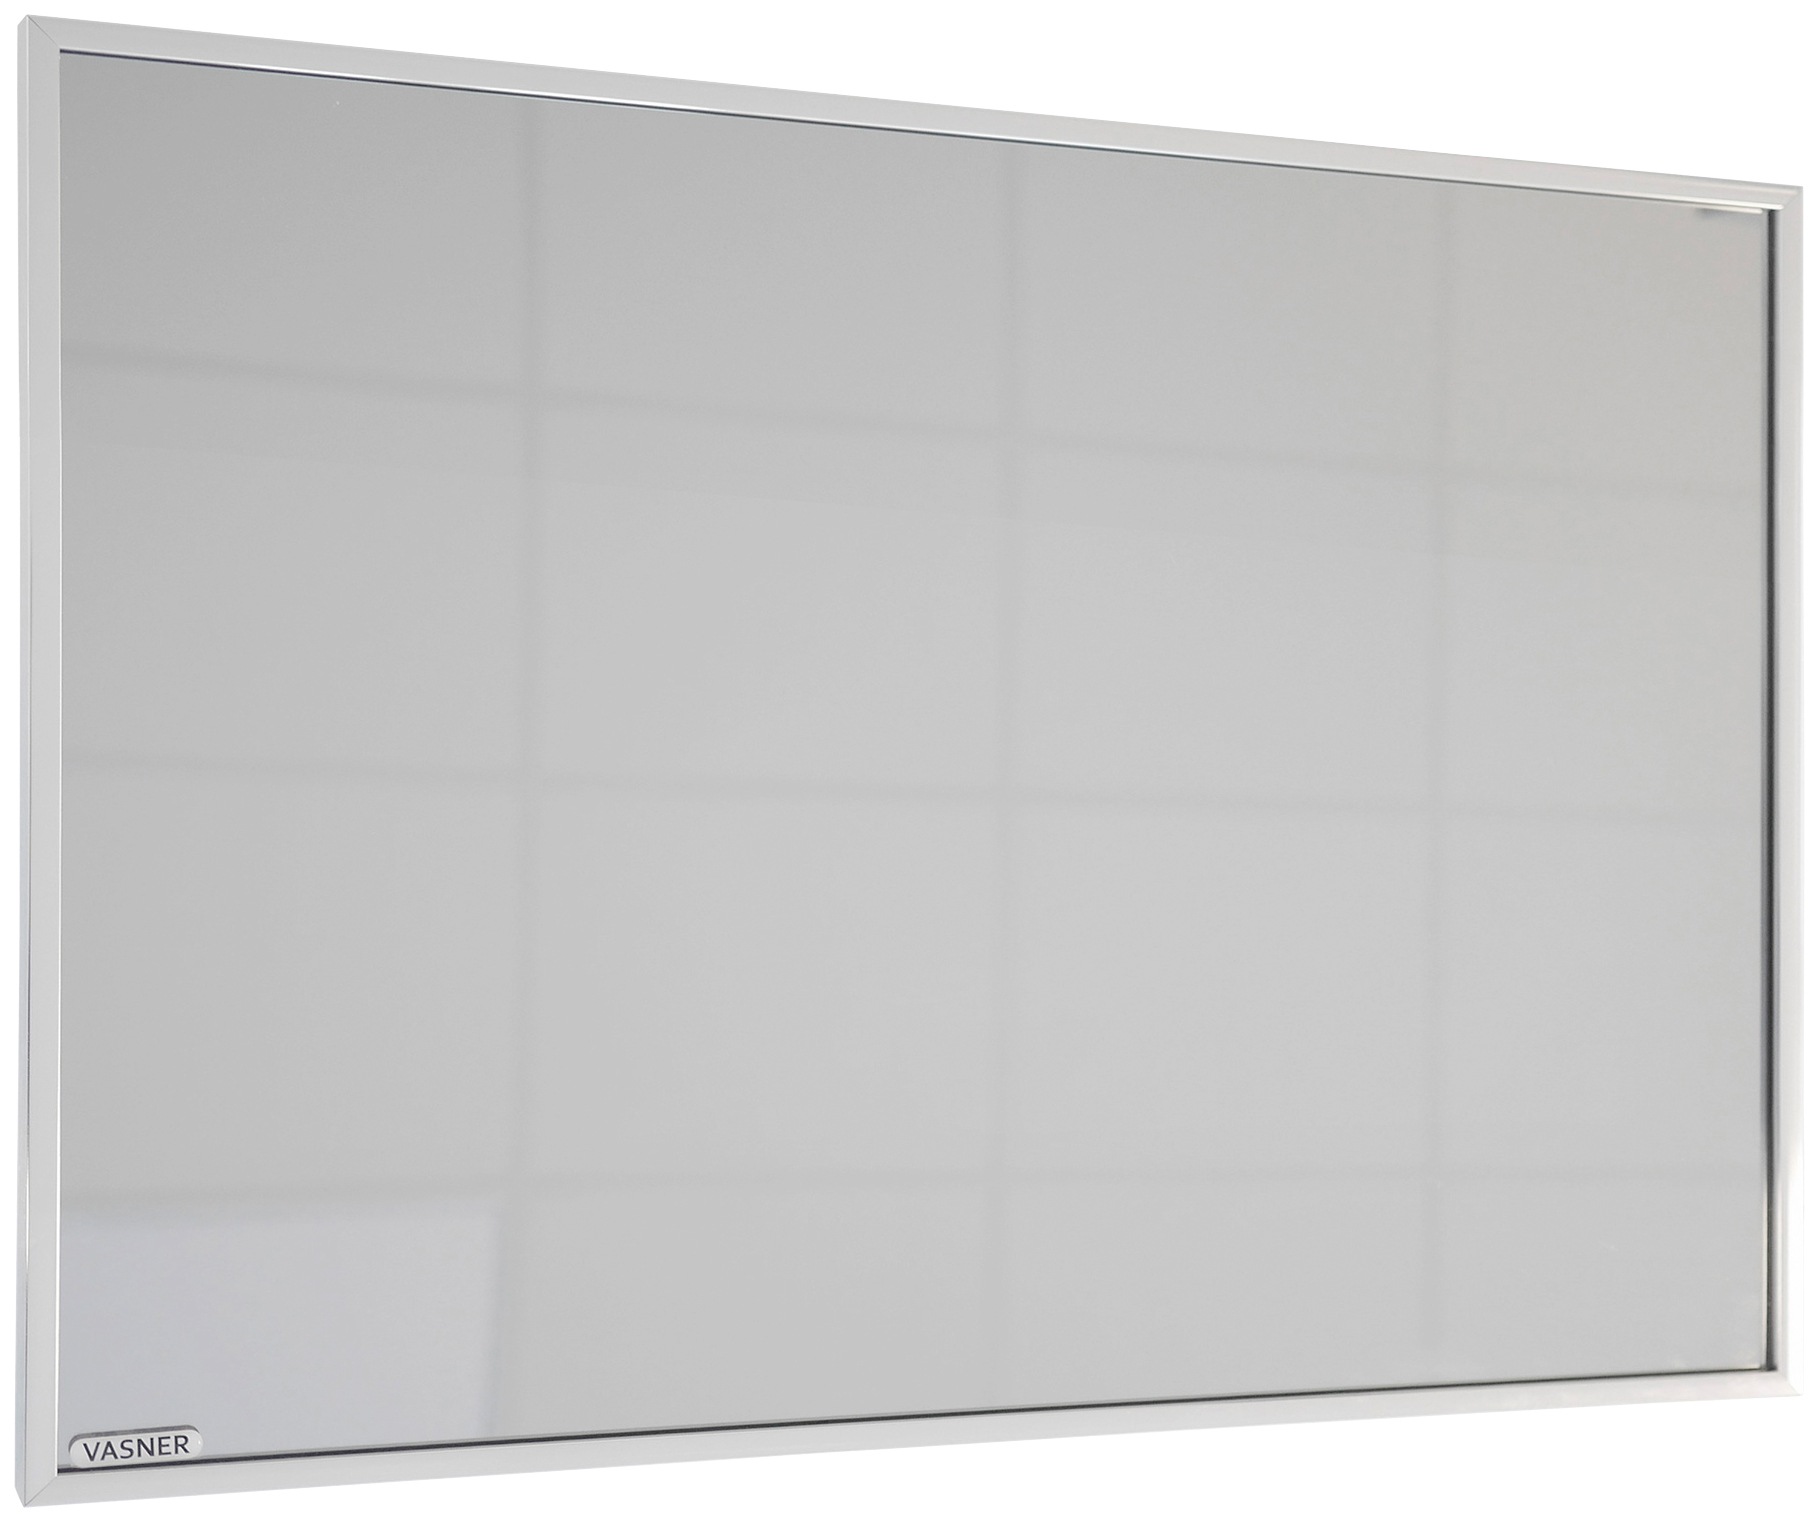 Vasner Infrarotheizung »Zipris S 900«, 900 W, Spiegelheizung mit Chrom-Rahmen